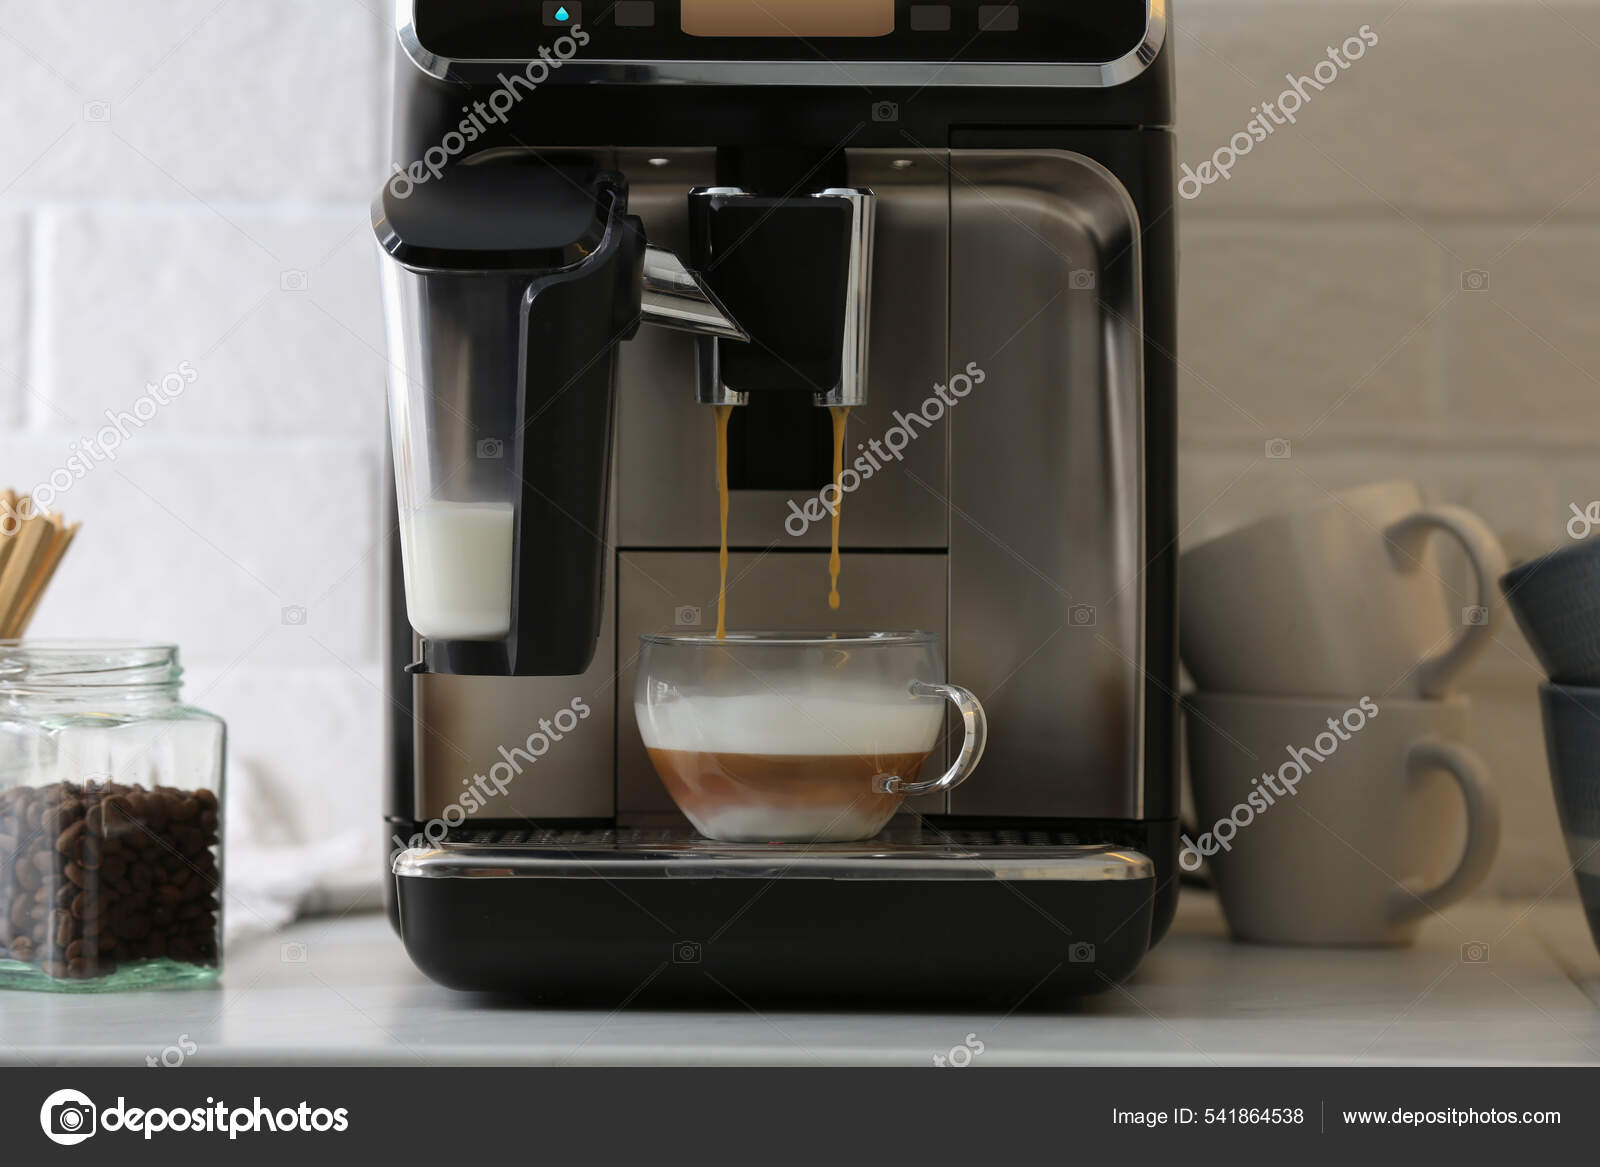 https://st.depositphotos.com/16122460/54186/i/1600/depositphotos_541864538-stock-photo-modern-espresso-machine-pouring-coffee.jpg